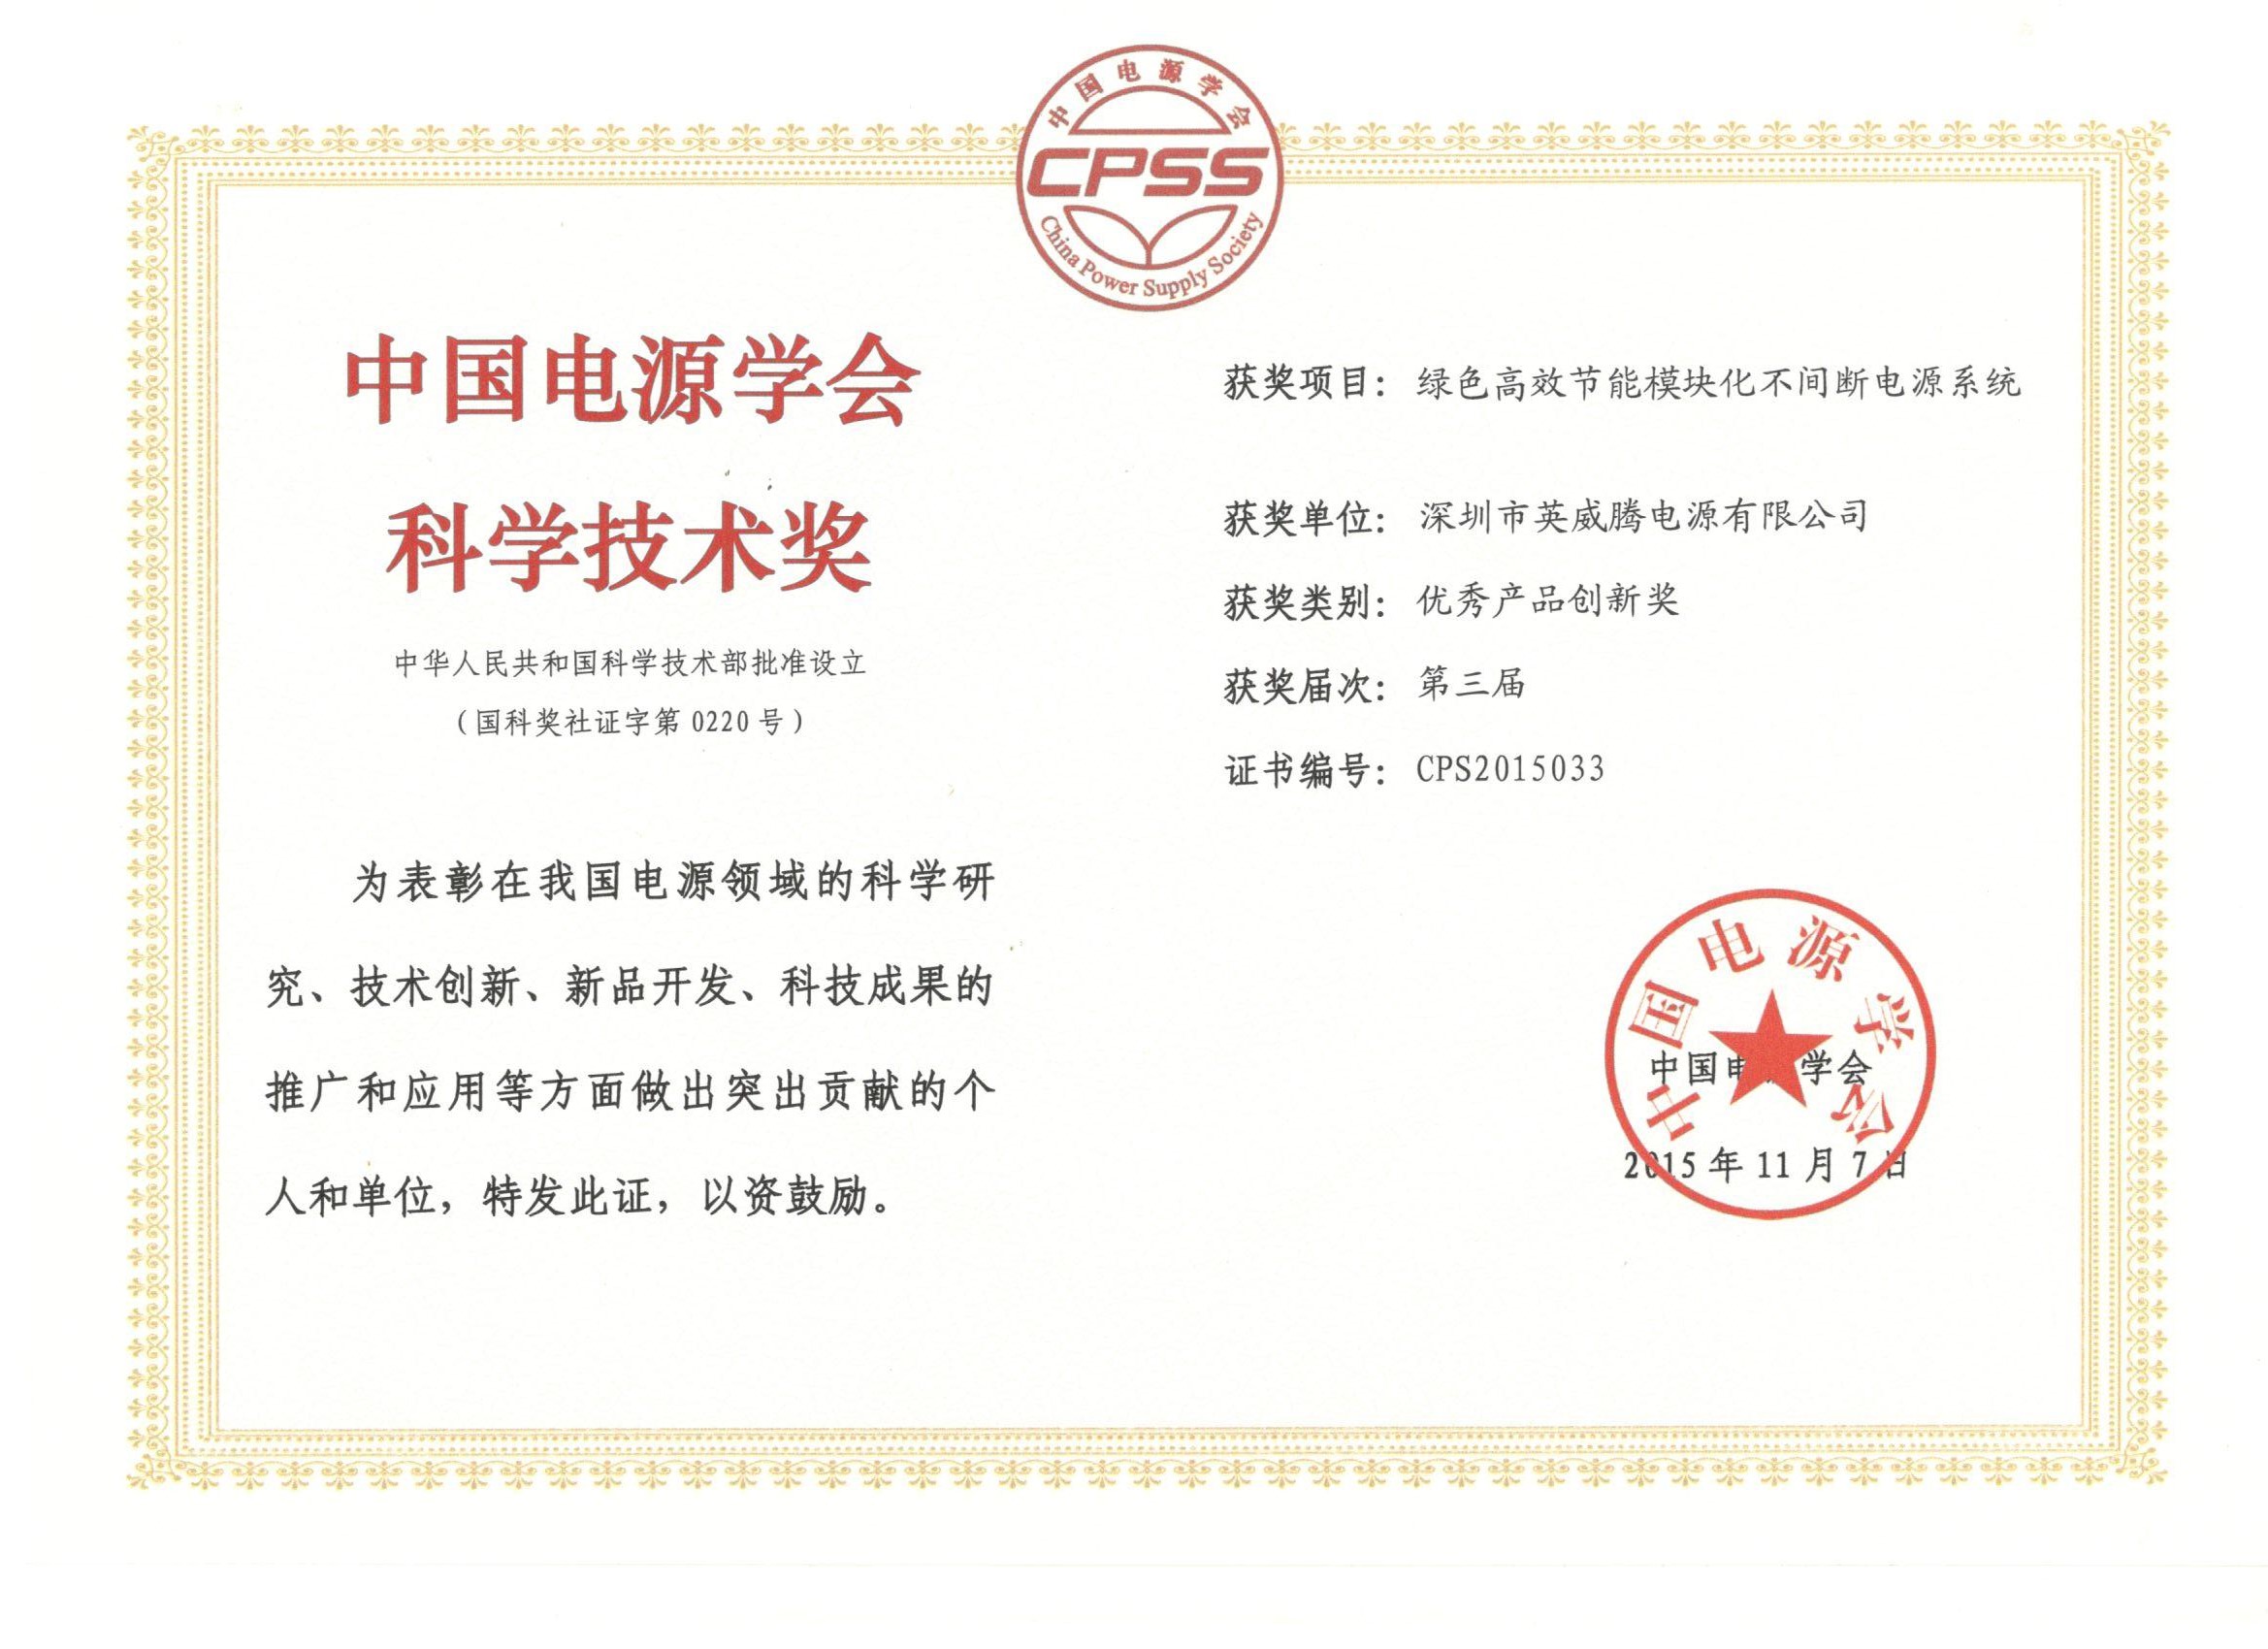 英威腾电源荣获第三届中国电源学会科学技术奖